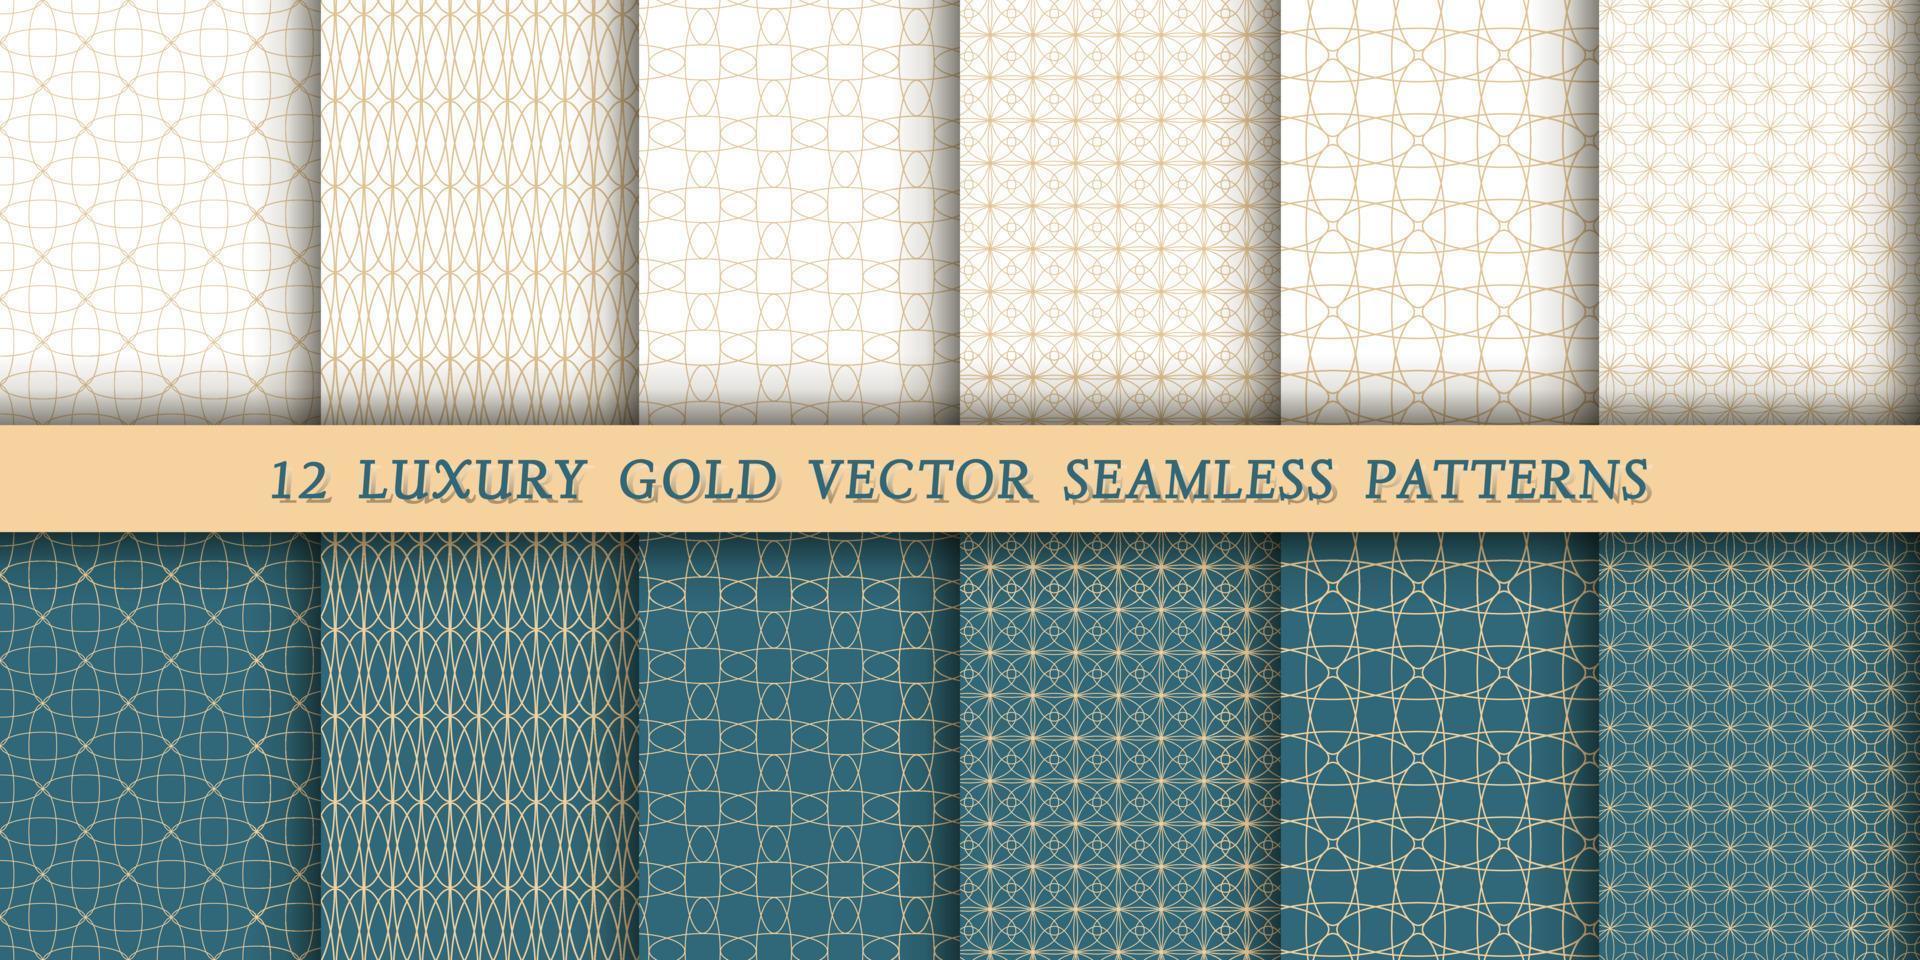 un conjunto de 12 lujosos motivos geométricos dorados para impresión y diseño, líneas doradas sobre un fondo blanco y verde esmeralda. patrones modernos y elegantes vector